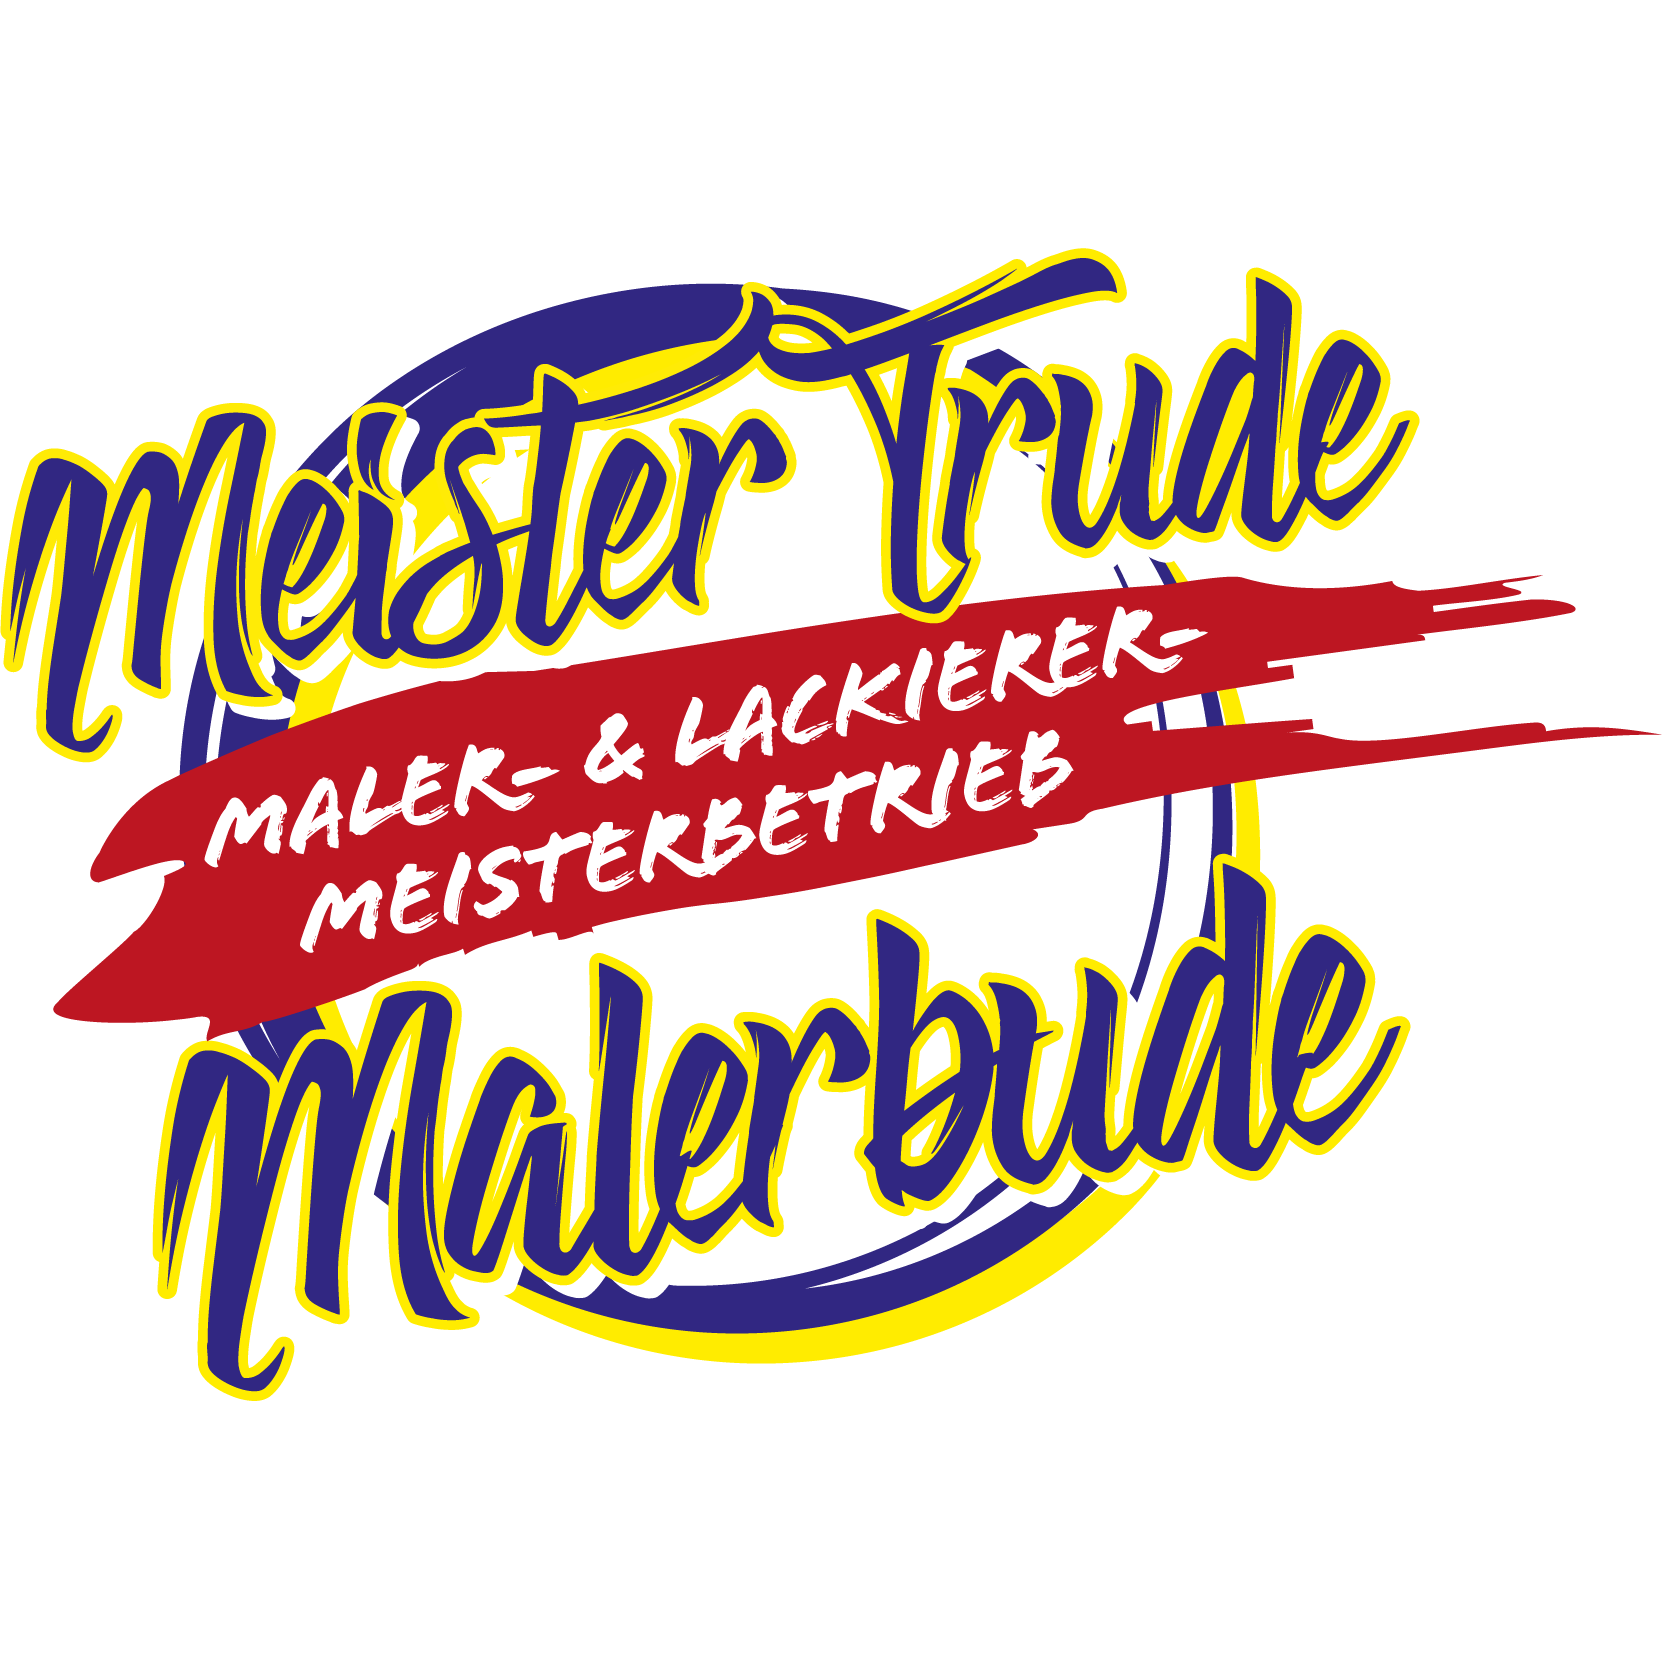 Meister Trude Malerbude in Zülpich - Logo